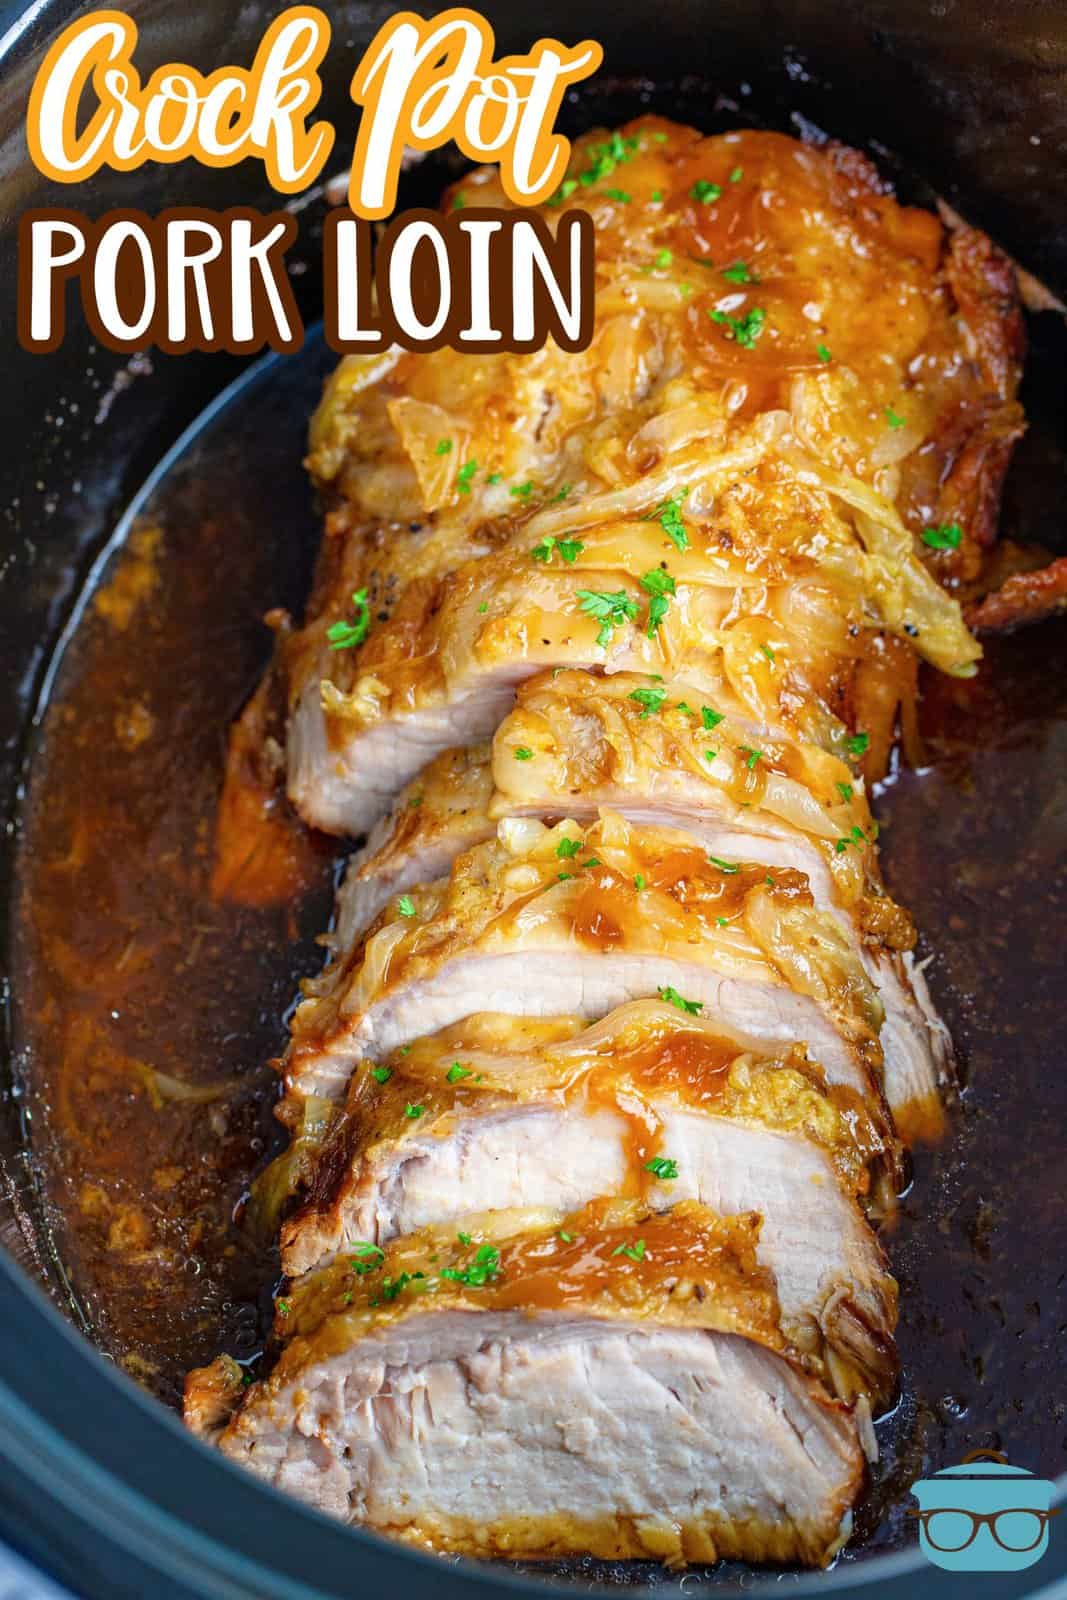 Finished sliced up Crock Pot Pork Loin in crock pot, Pinterest image.